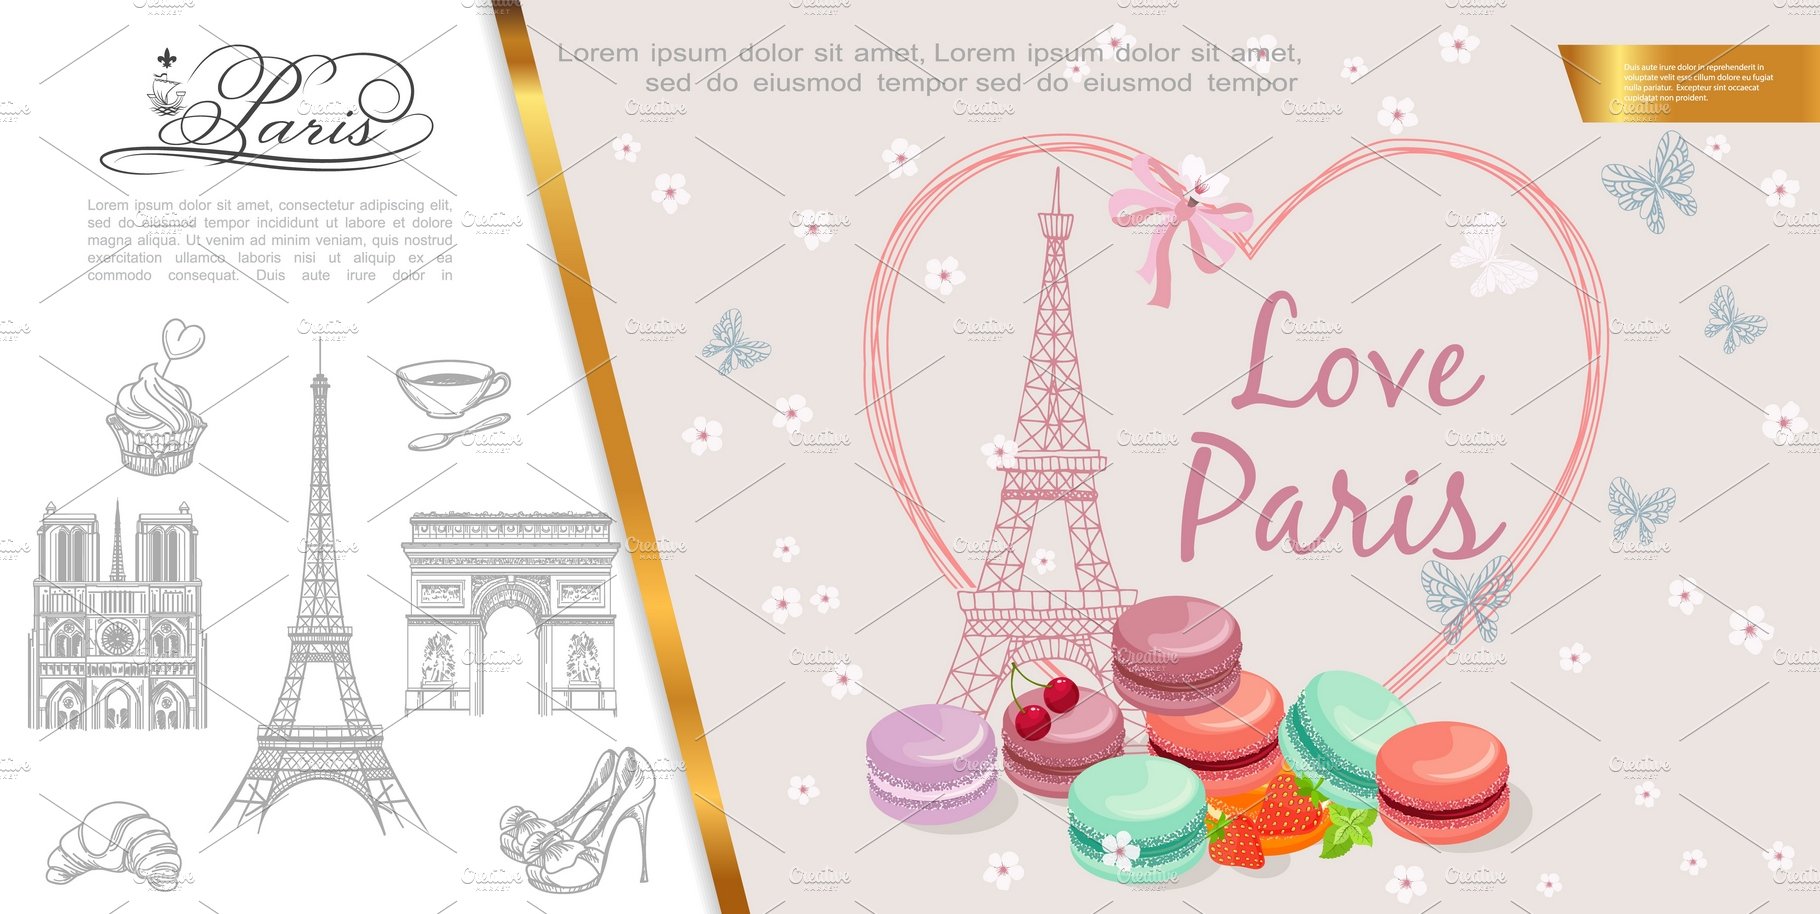 Romantic Paris concept cover image.